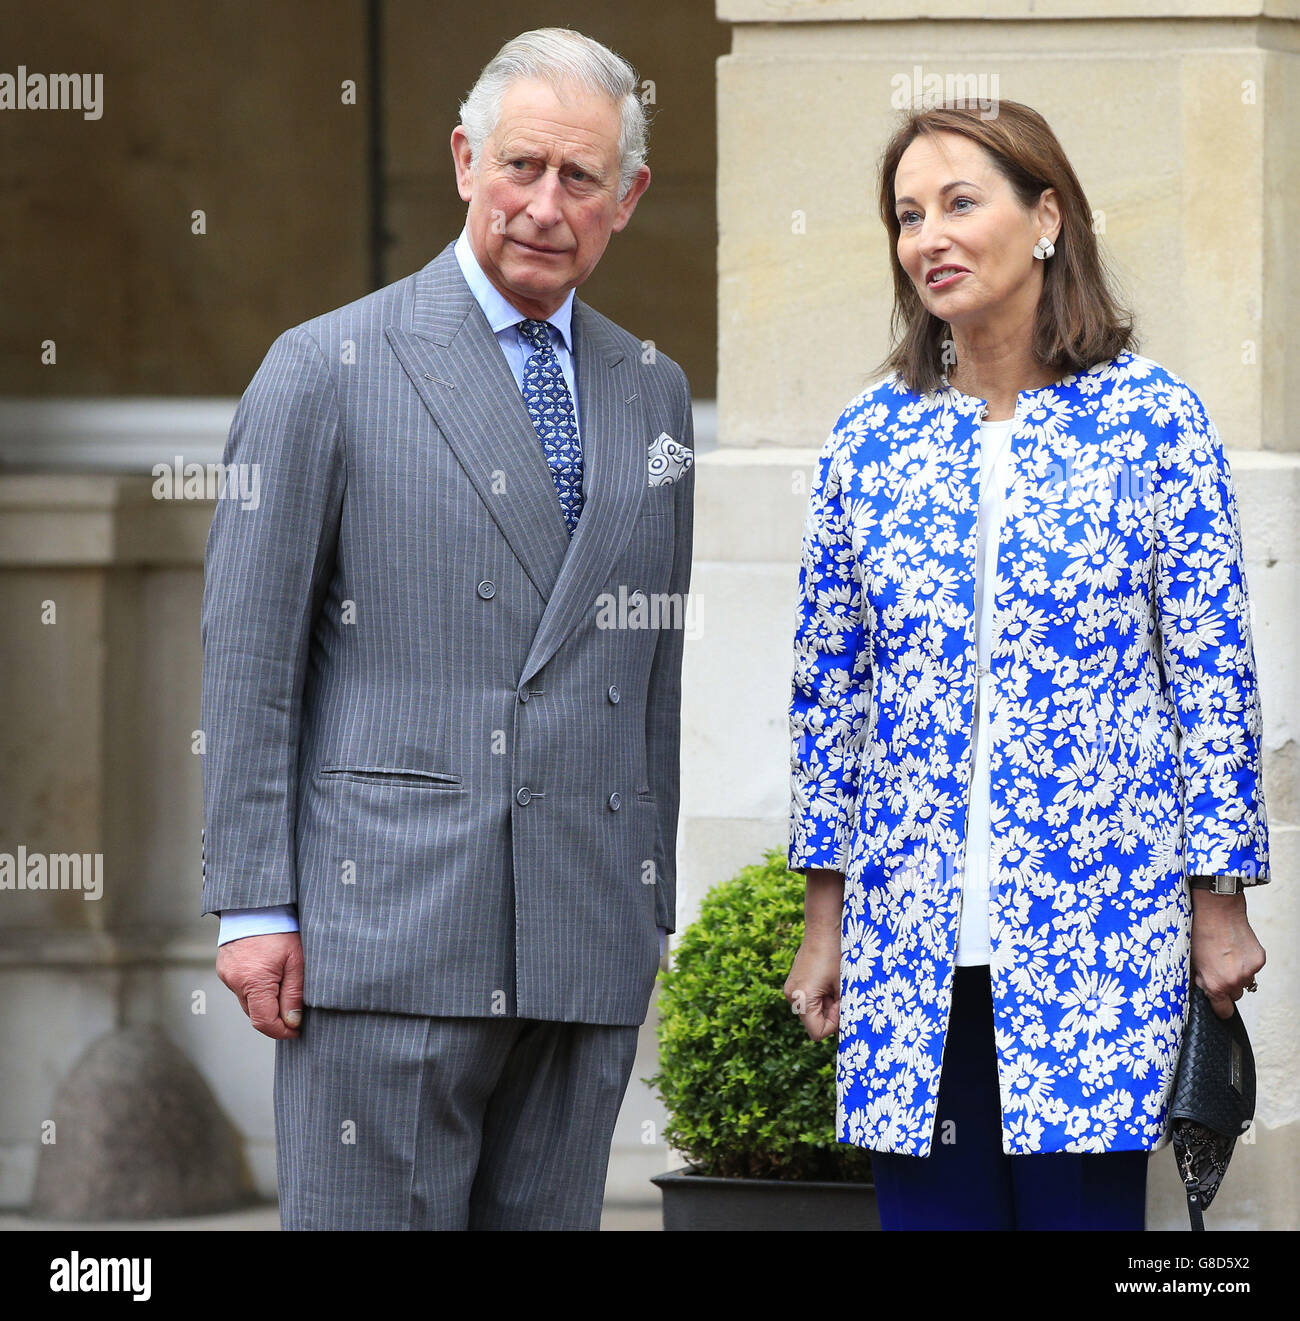 Le Prince de Galles et Ségolène Royal (à droite) arrivent à une réunion sur les forêts et les changements climatiques à Lancaster House à Londres, en prévision de la prochaine Conférence COP21 des Nations Unies sur les changements climatiques à Paris. Banque D'Images